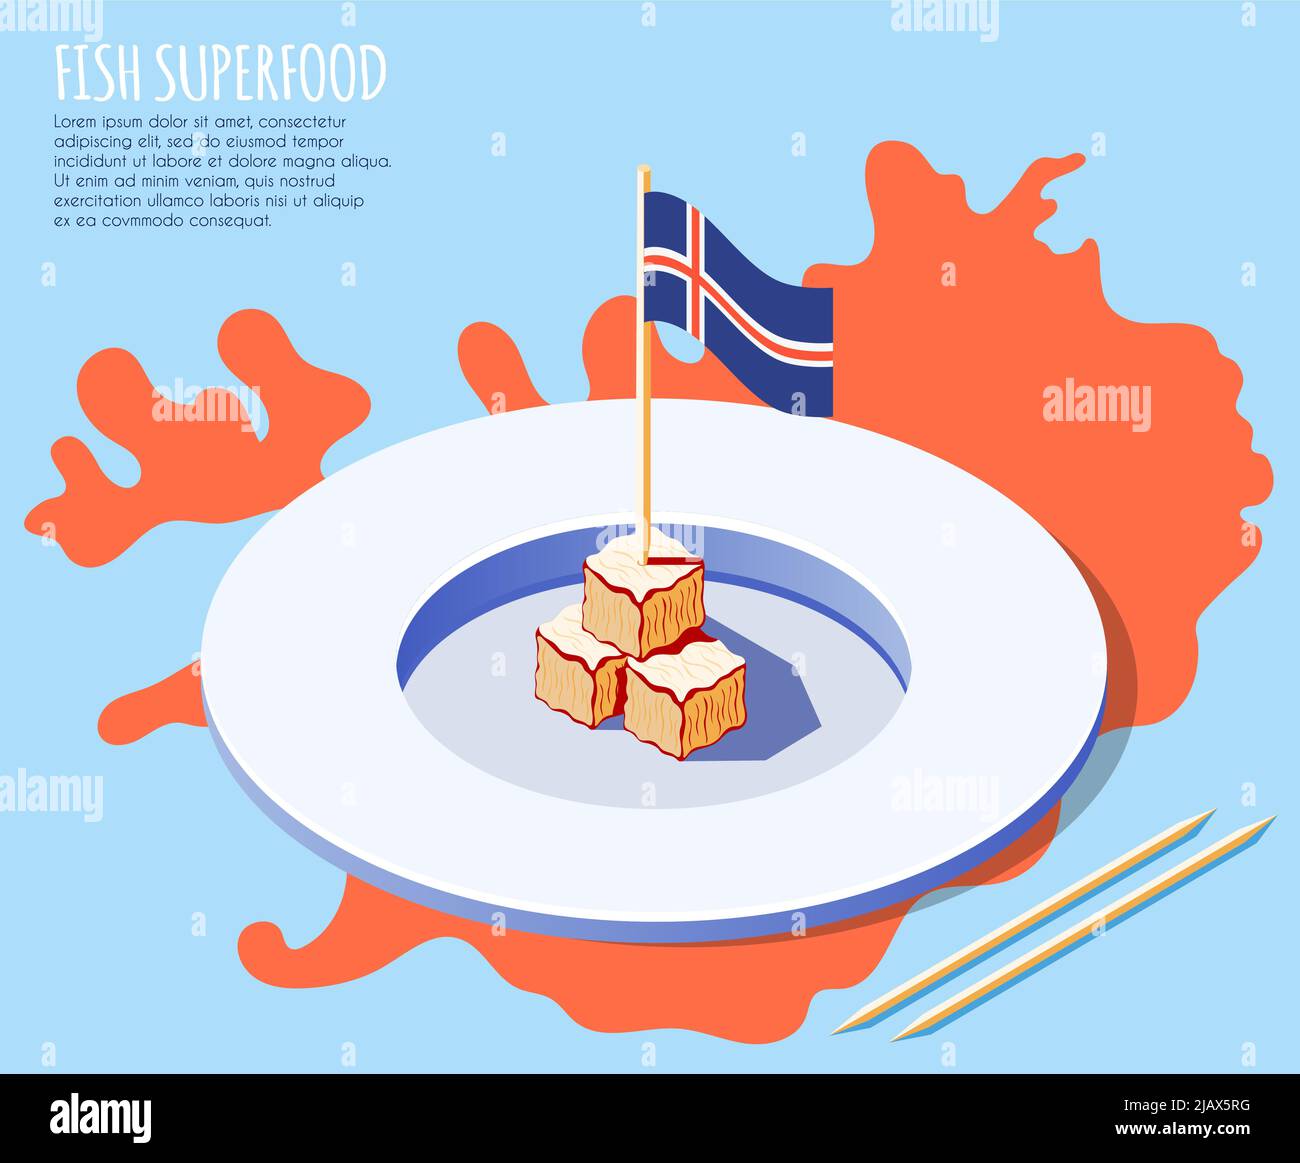 Fondo isometrico di pesce superalimentare con piatto di carne secca di squalo sulla mappa dell'islanda e illustrazione del vettore nazionale della bandiera Illustrazione Vettoriale